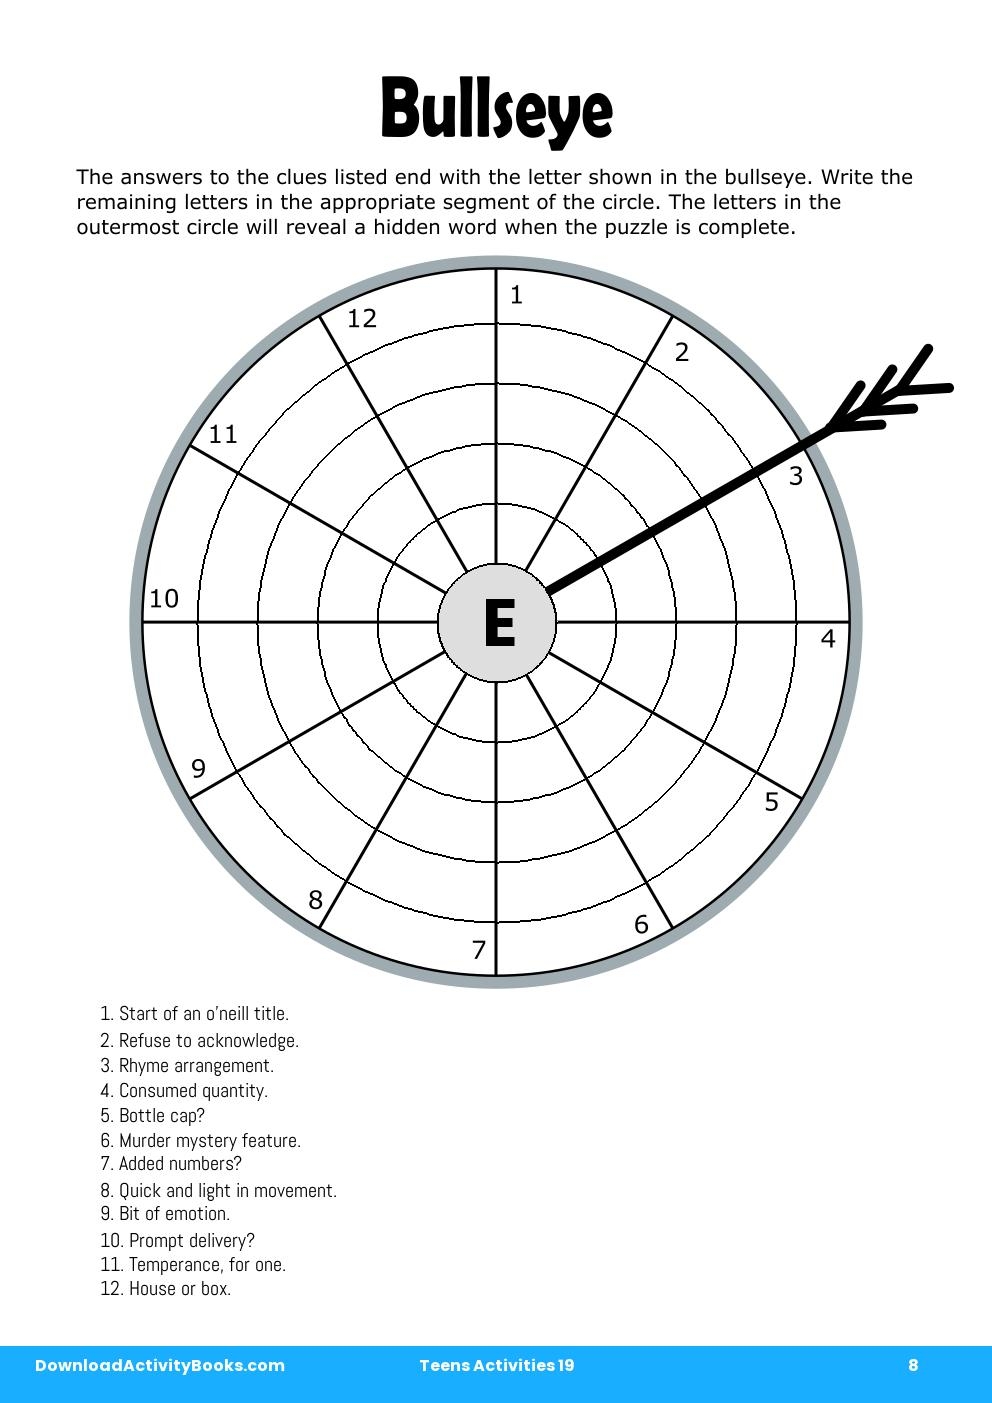 Bullseye in Teens Activities 19